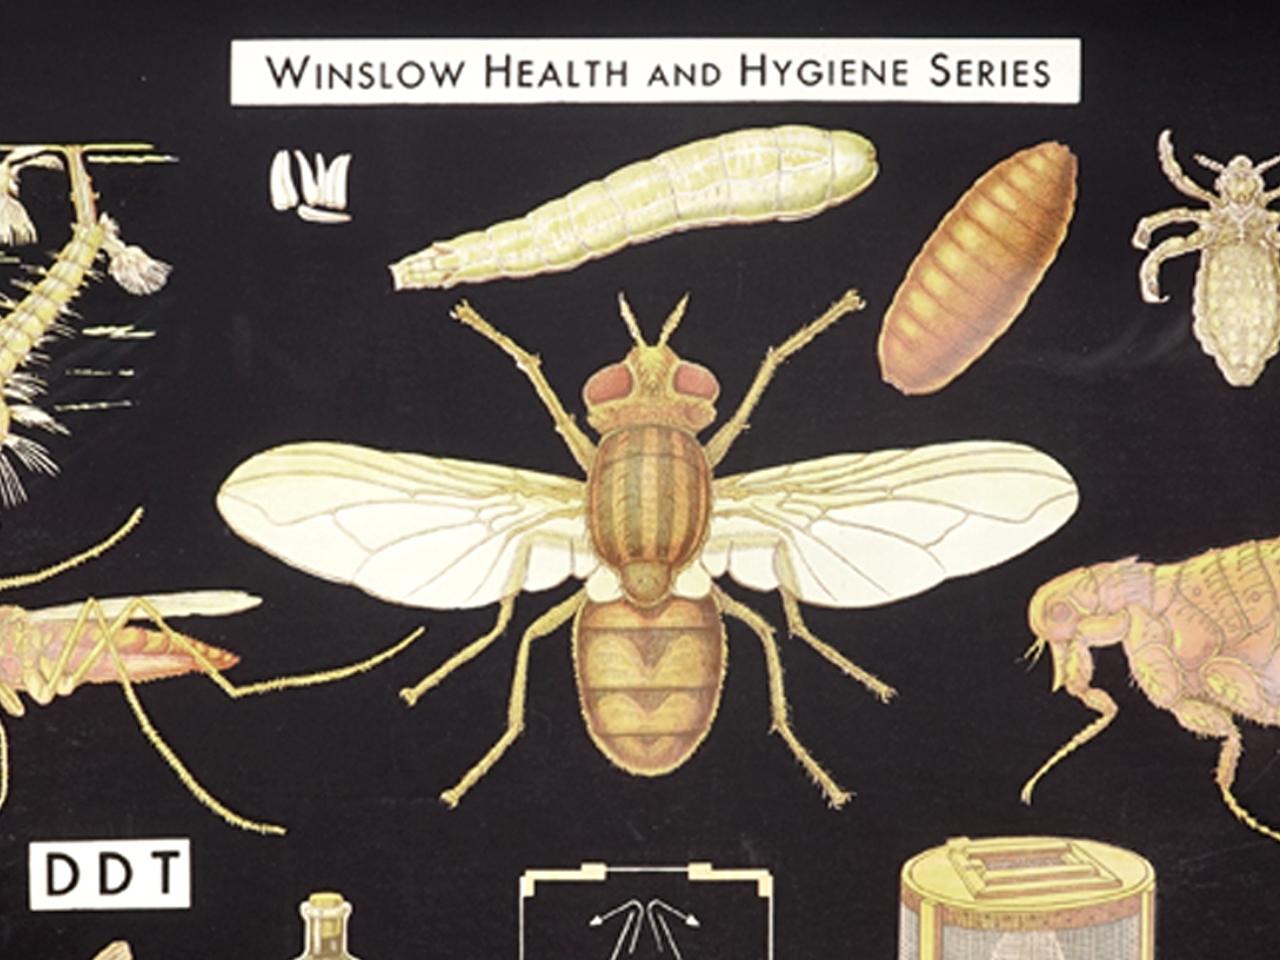 Industriel Affiche de santé et d'hygiène de Winslow, Insect Enemies